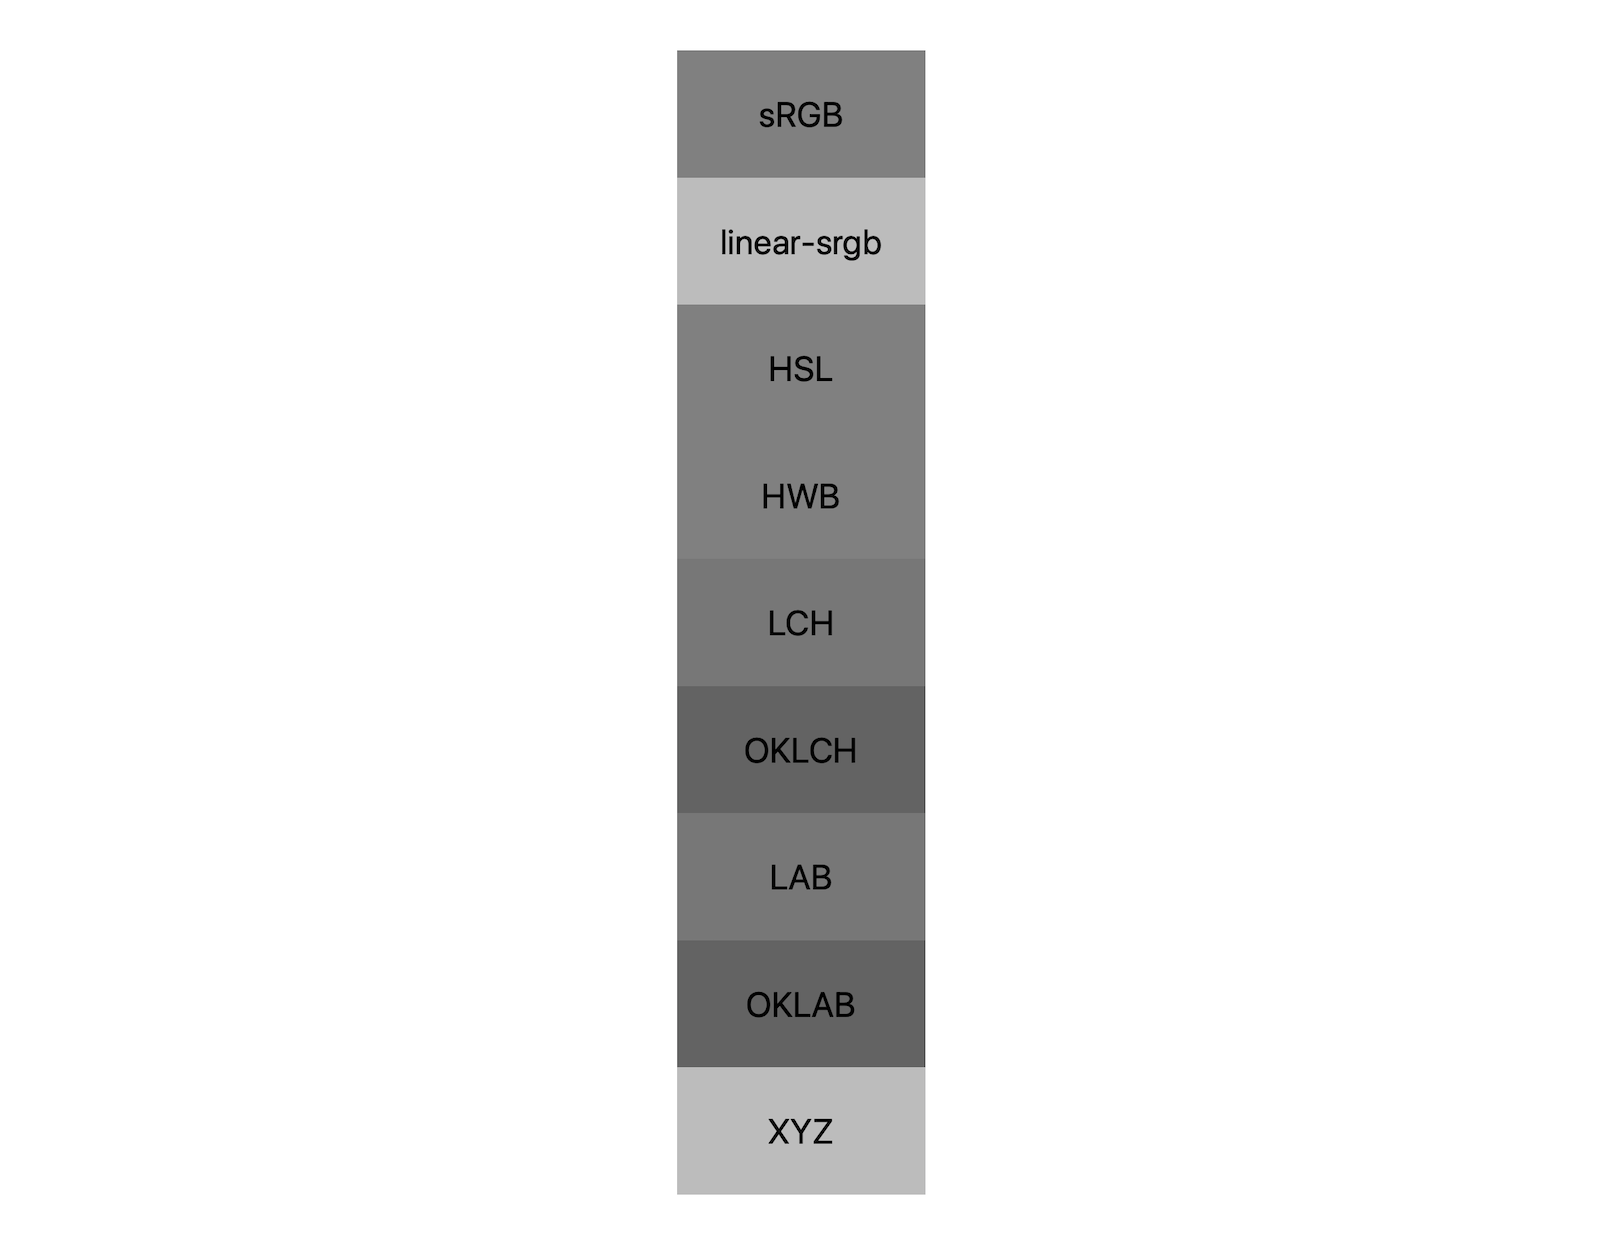 พื้นที่สี 7 ช่อง (srgb, linear-srgb, lch, oklch, lab, oklab, xyz) จะแสดงผลลัพธ์ของการผสมผสานสีขาวและสีดำ จะแสดงเฉดสีประมาณ 5 เฉด ซึ่งแสดงให้เห็นว่าพื้นที่สีแต่ละพื้นที่จะผสมกับสีเทาแตกต่างกัน